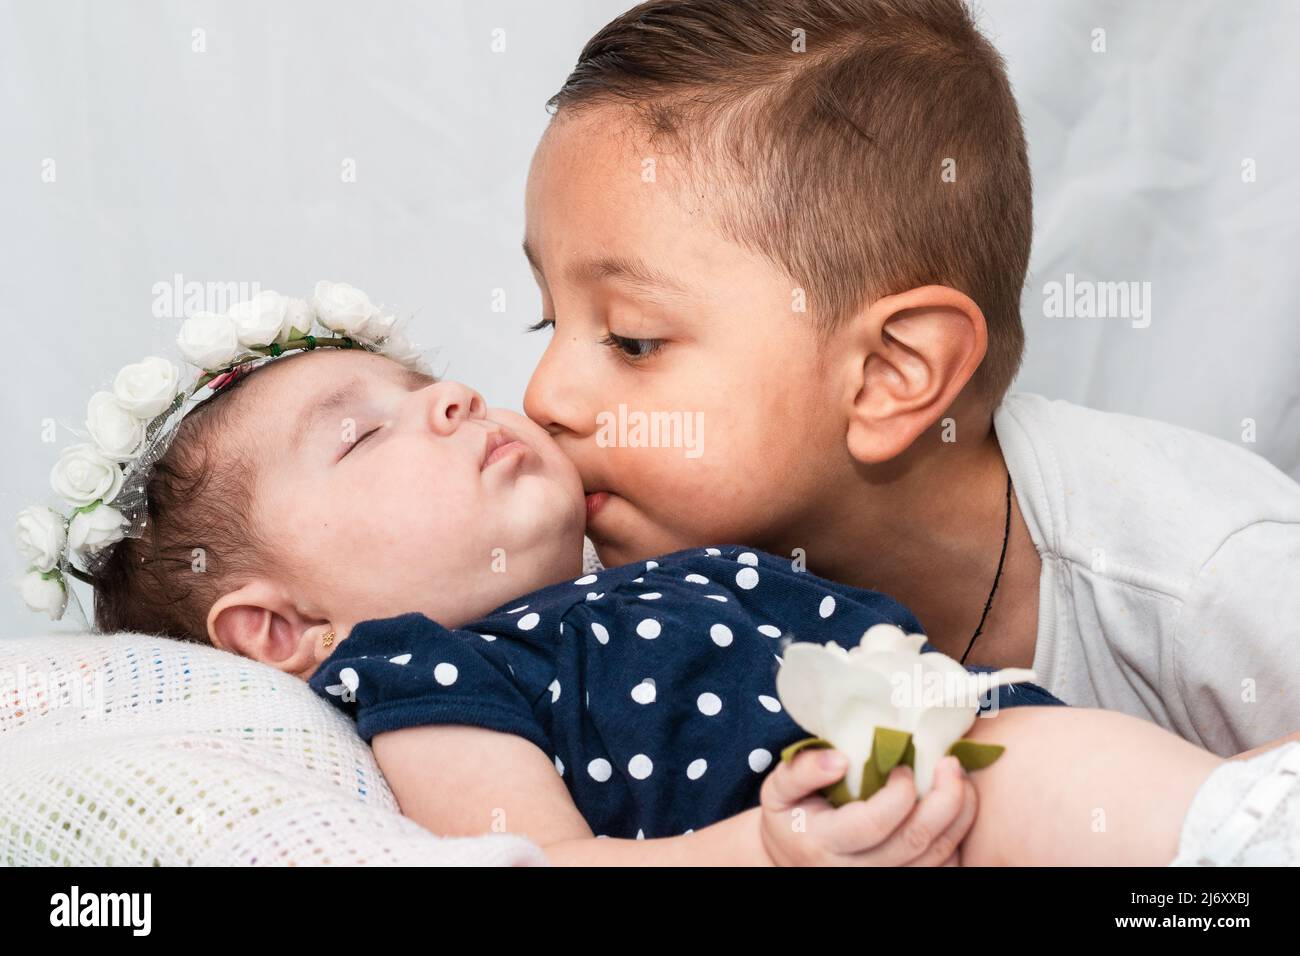 niño latino besando la mejilla de su hermana pequeña, el bebé está acostado sobre una almohada blanca, con los ojos cerrados, una corona de rosas blancas y sosteniendo una r Foto de stock